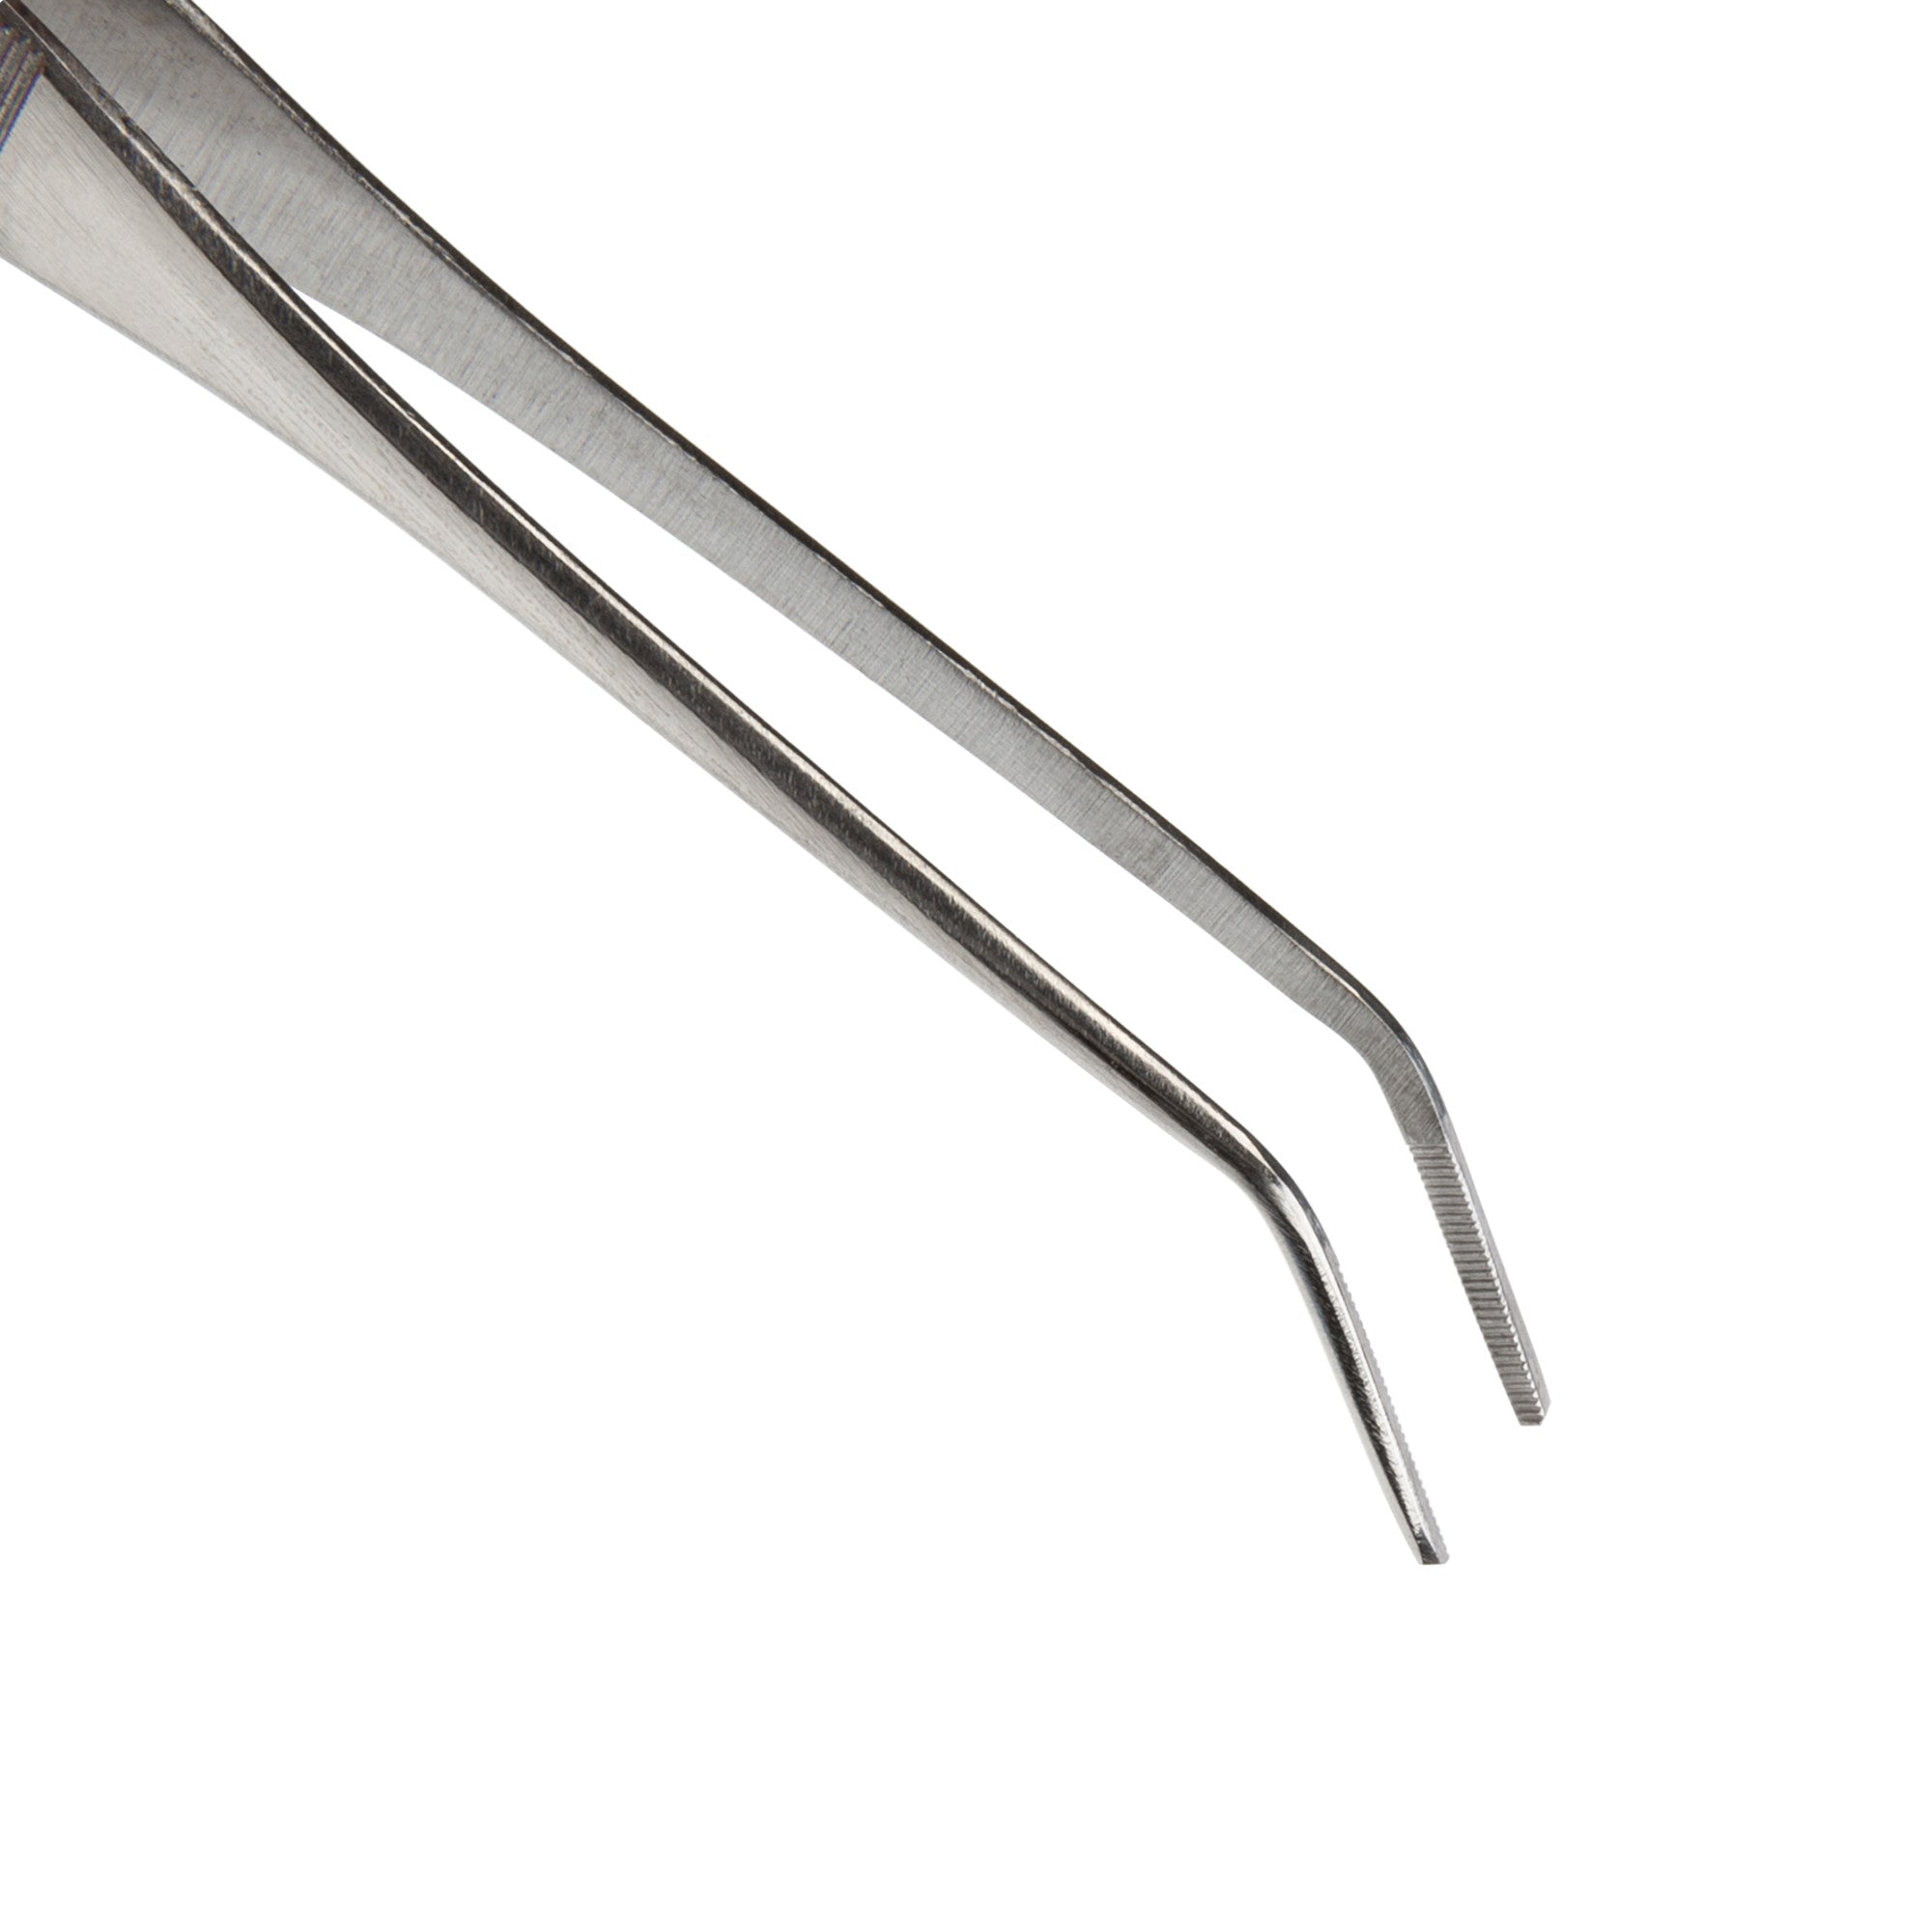 Steelman 05605 6.75-Inch Angled Sharp Tip Tweezers